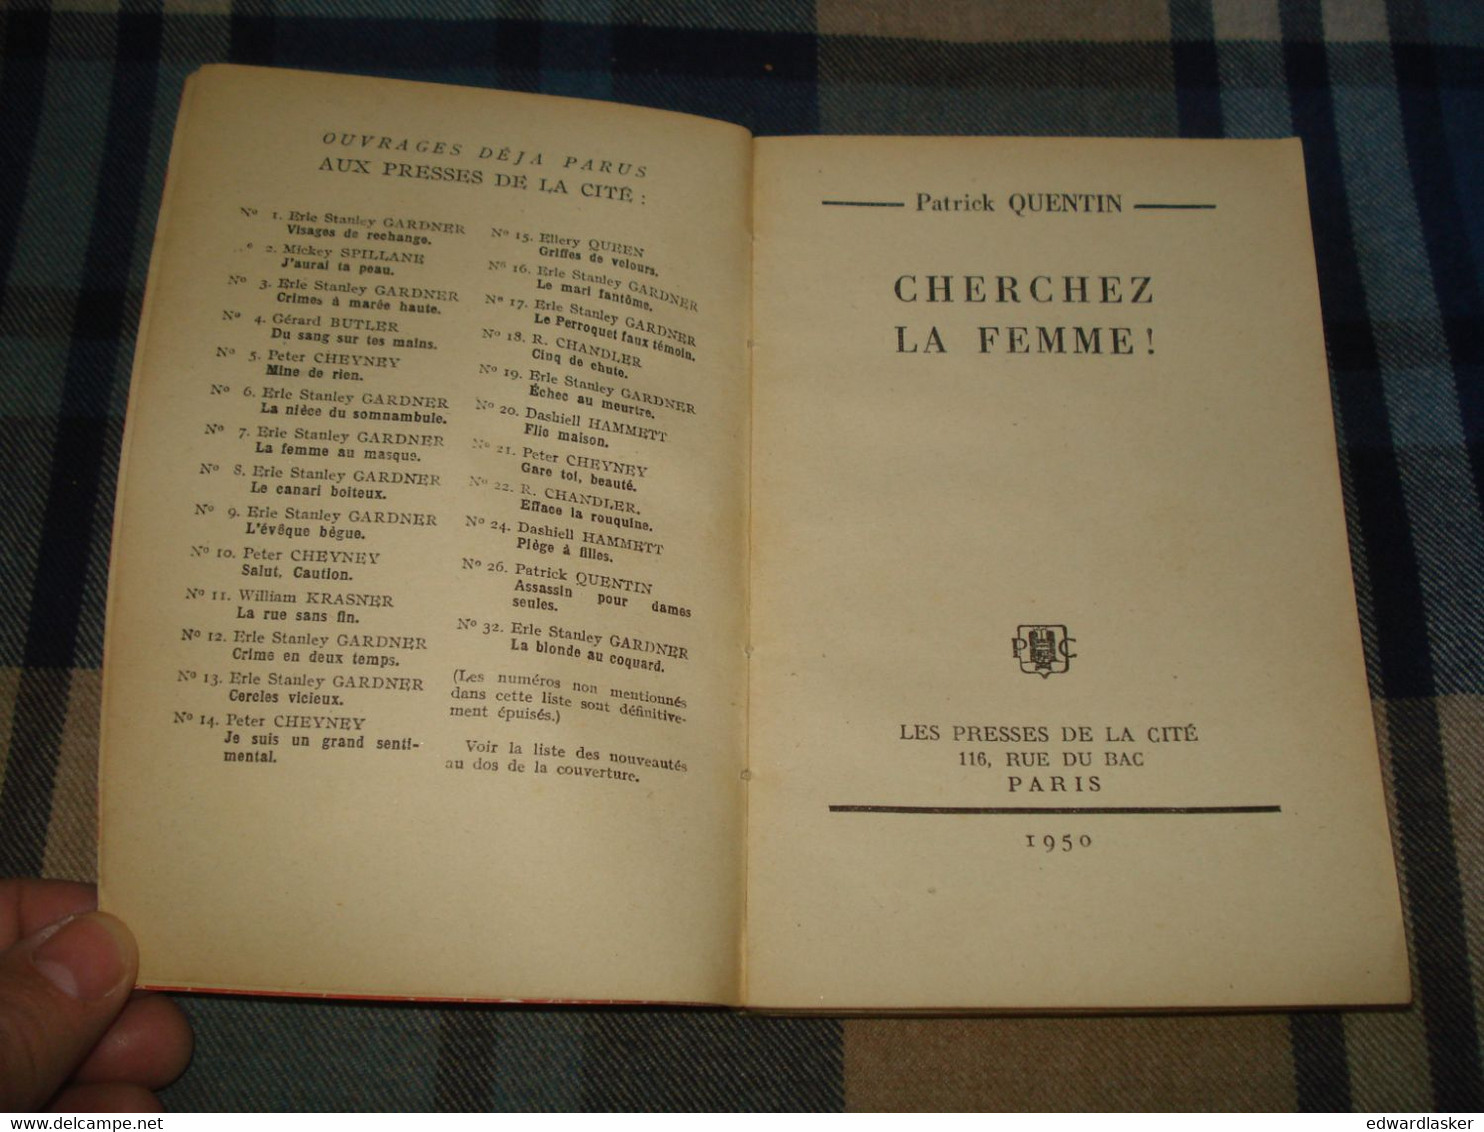 Un MYSTERE N°41 : CHERCHEZ La FEMME /Patrick QUENTIN - Décembre 1950 - Presses De La Cité